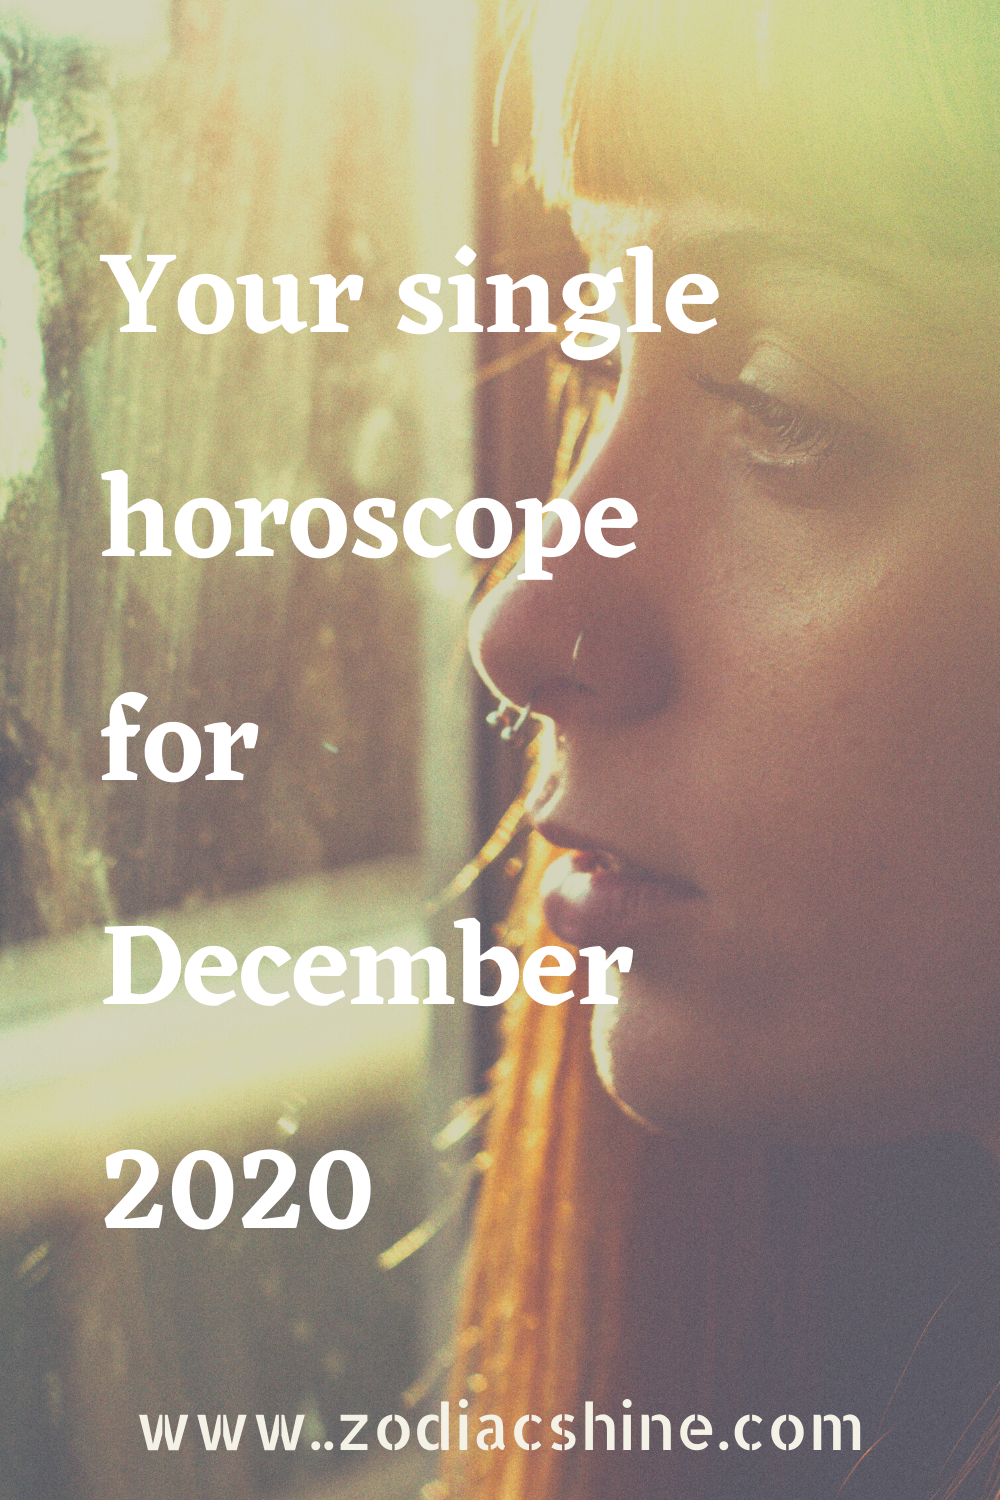 Your single horoscope for December 2020